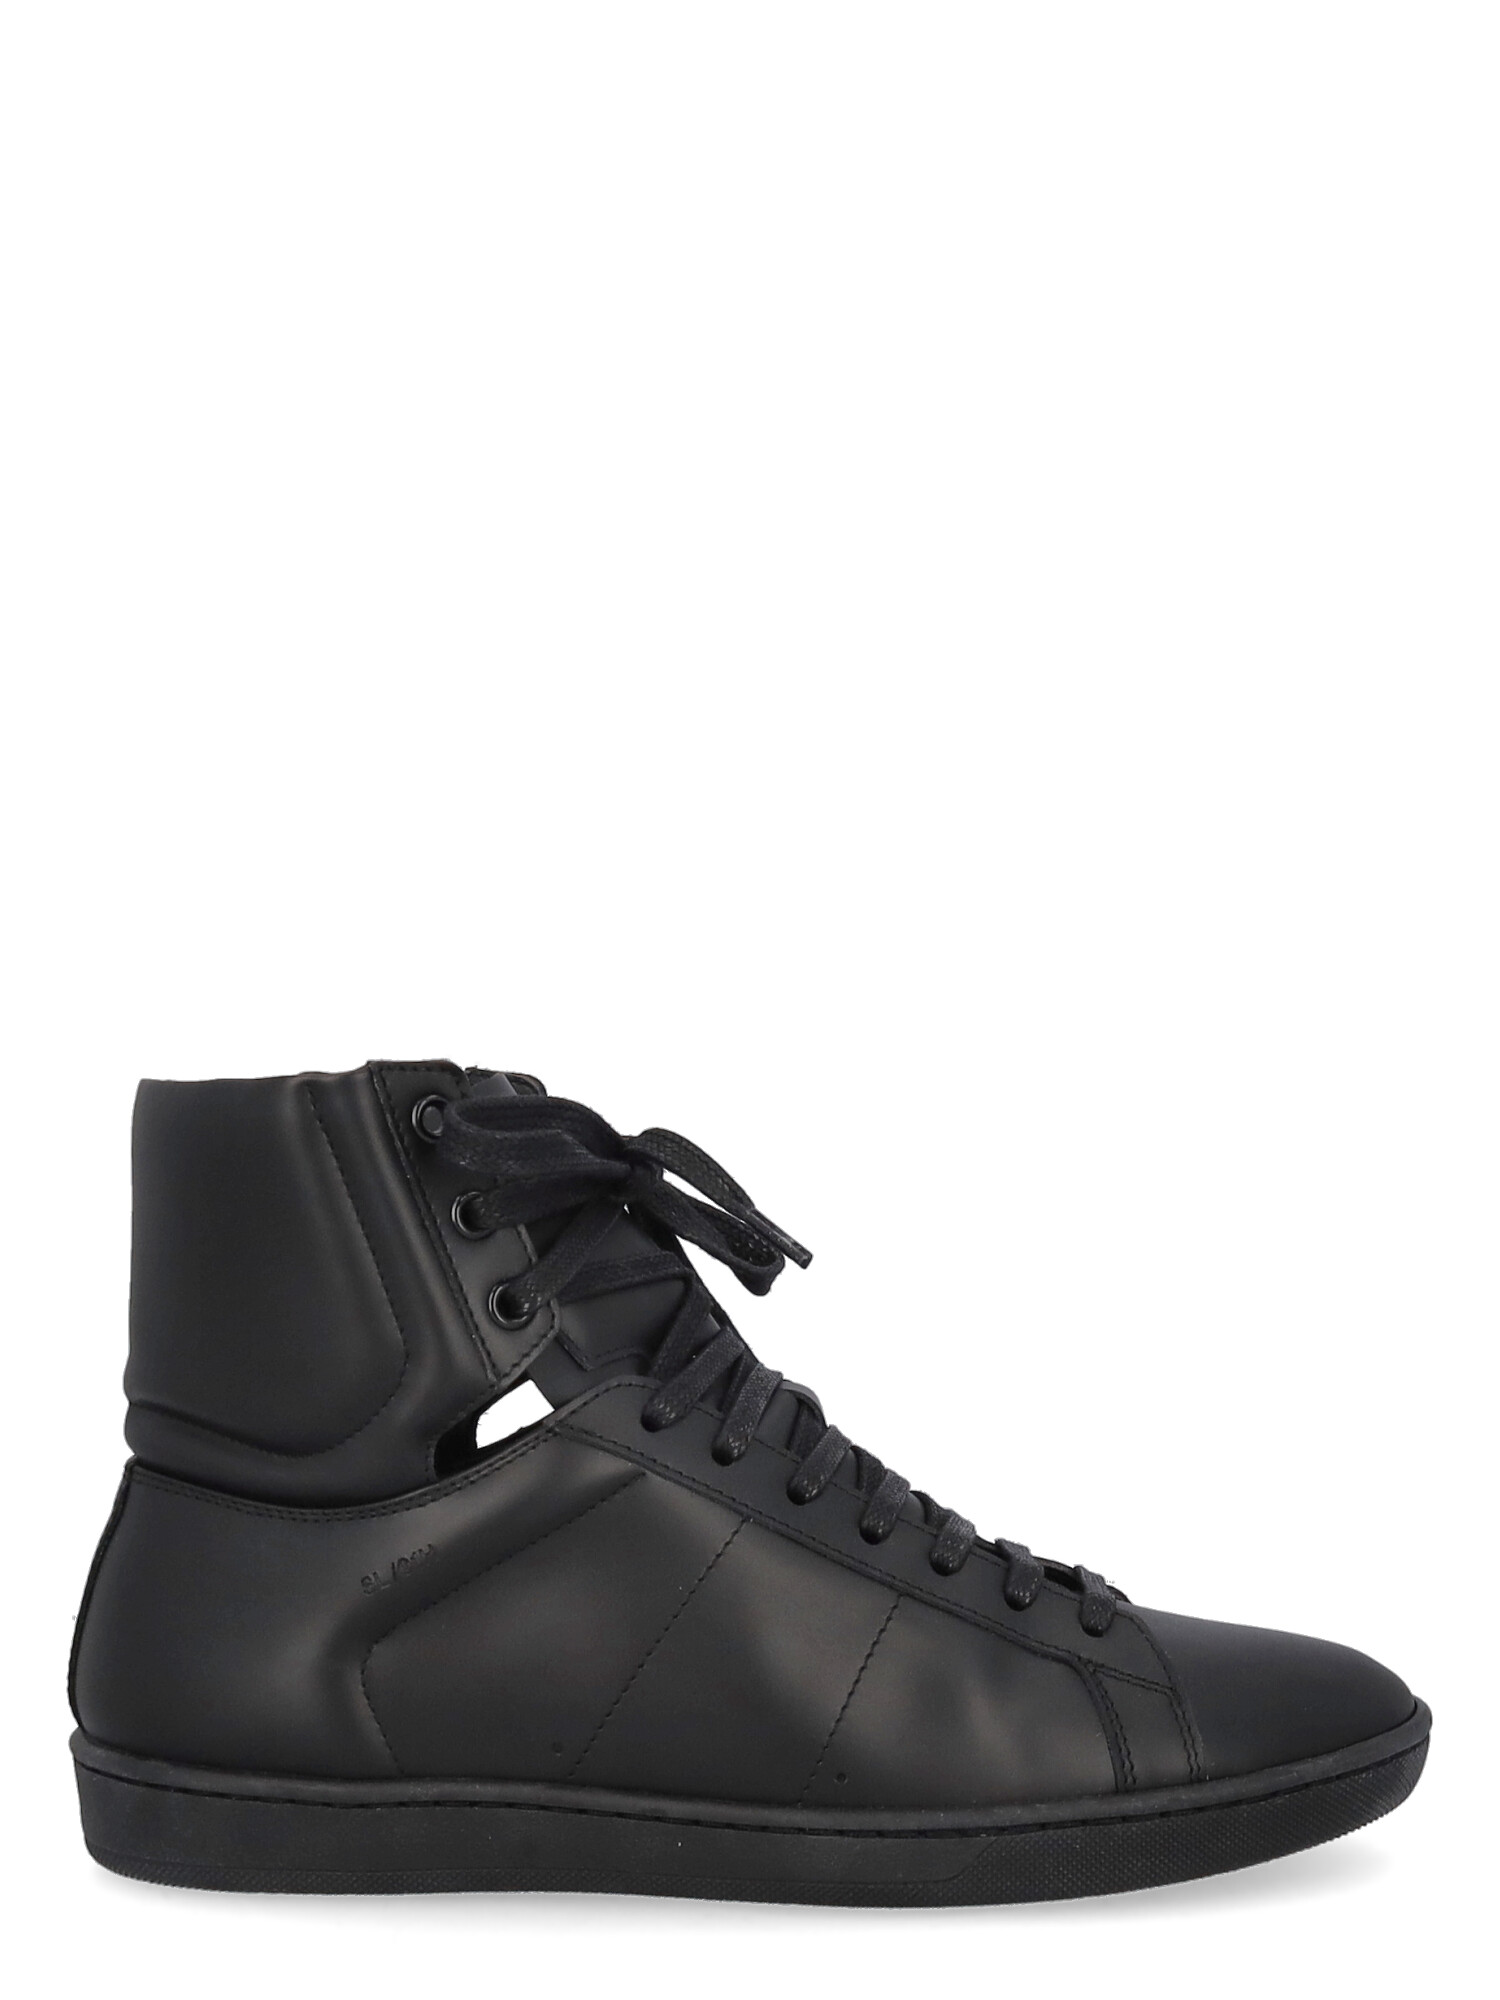 Damen Sneakers - Saint Laurent - In Black Leather - Größe: IT 39 - EU 39